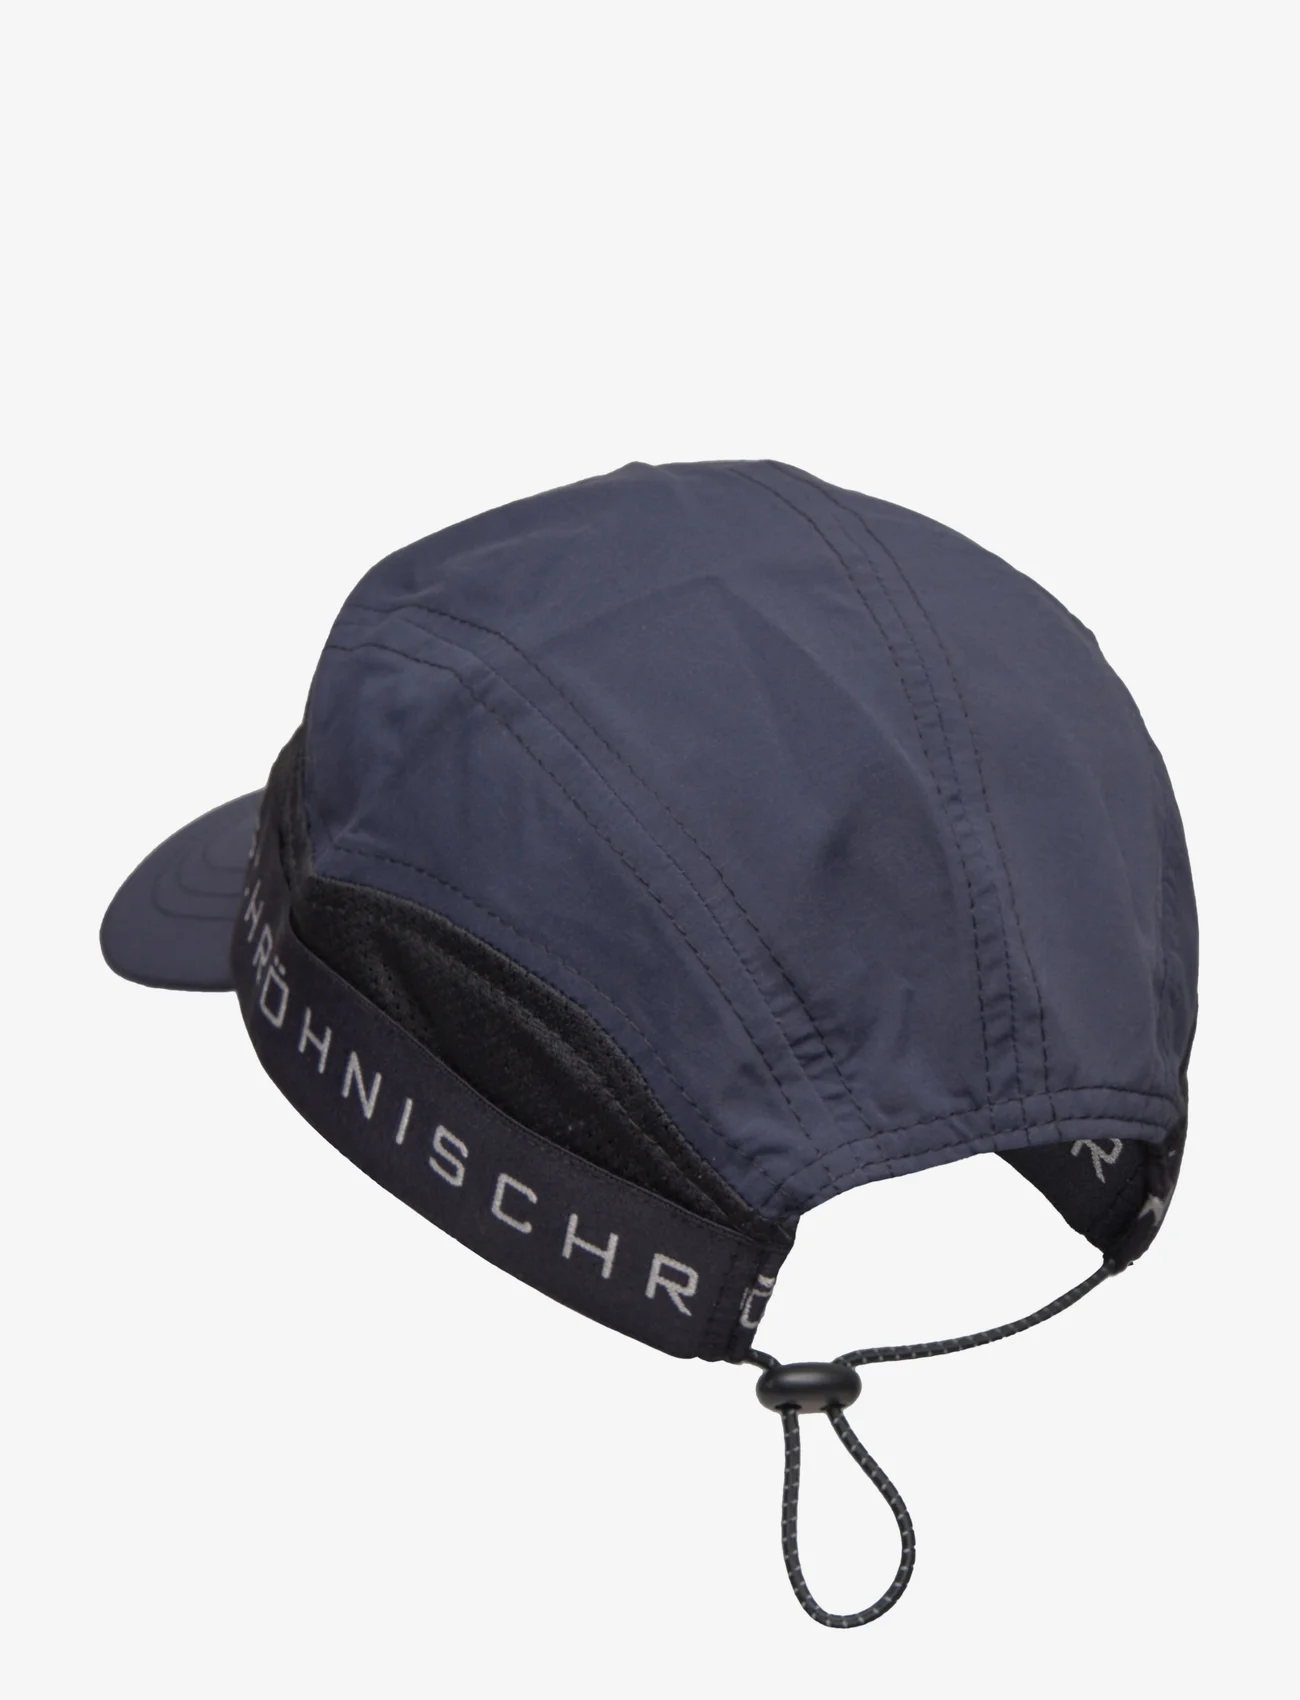 Röhnisch - Running Cap - lowest prices - black - 1